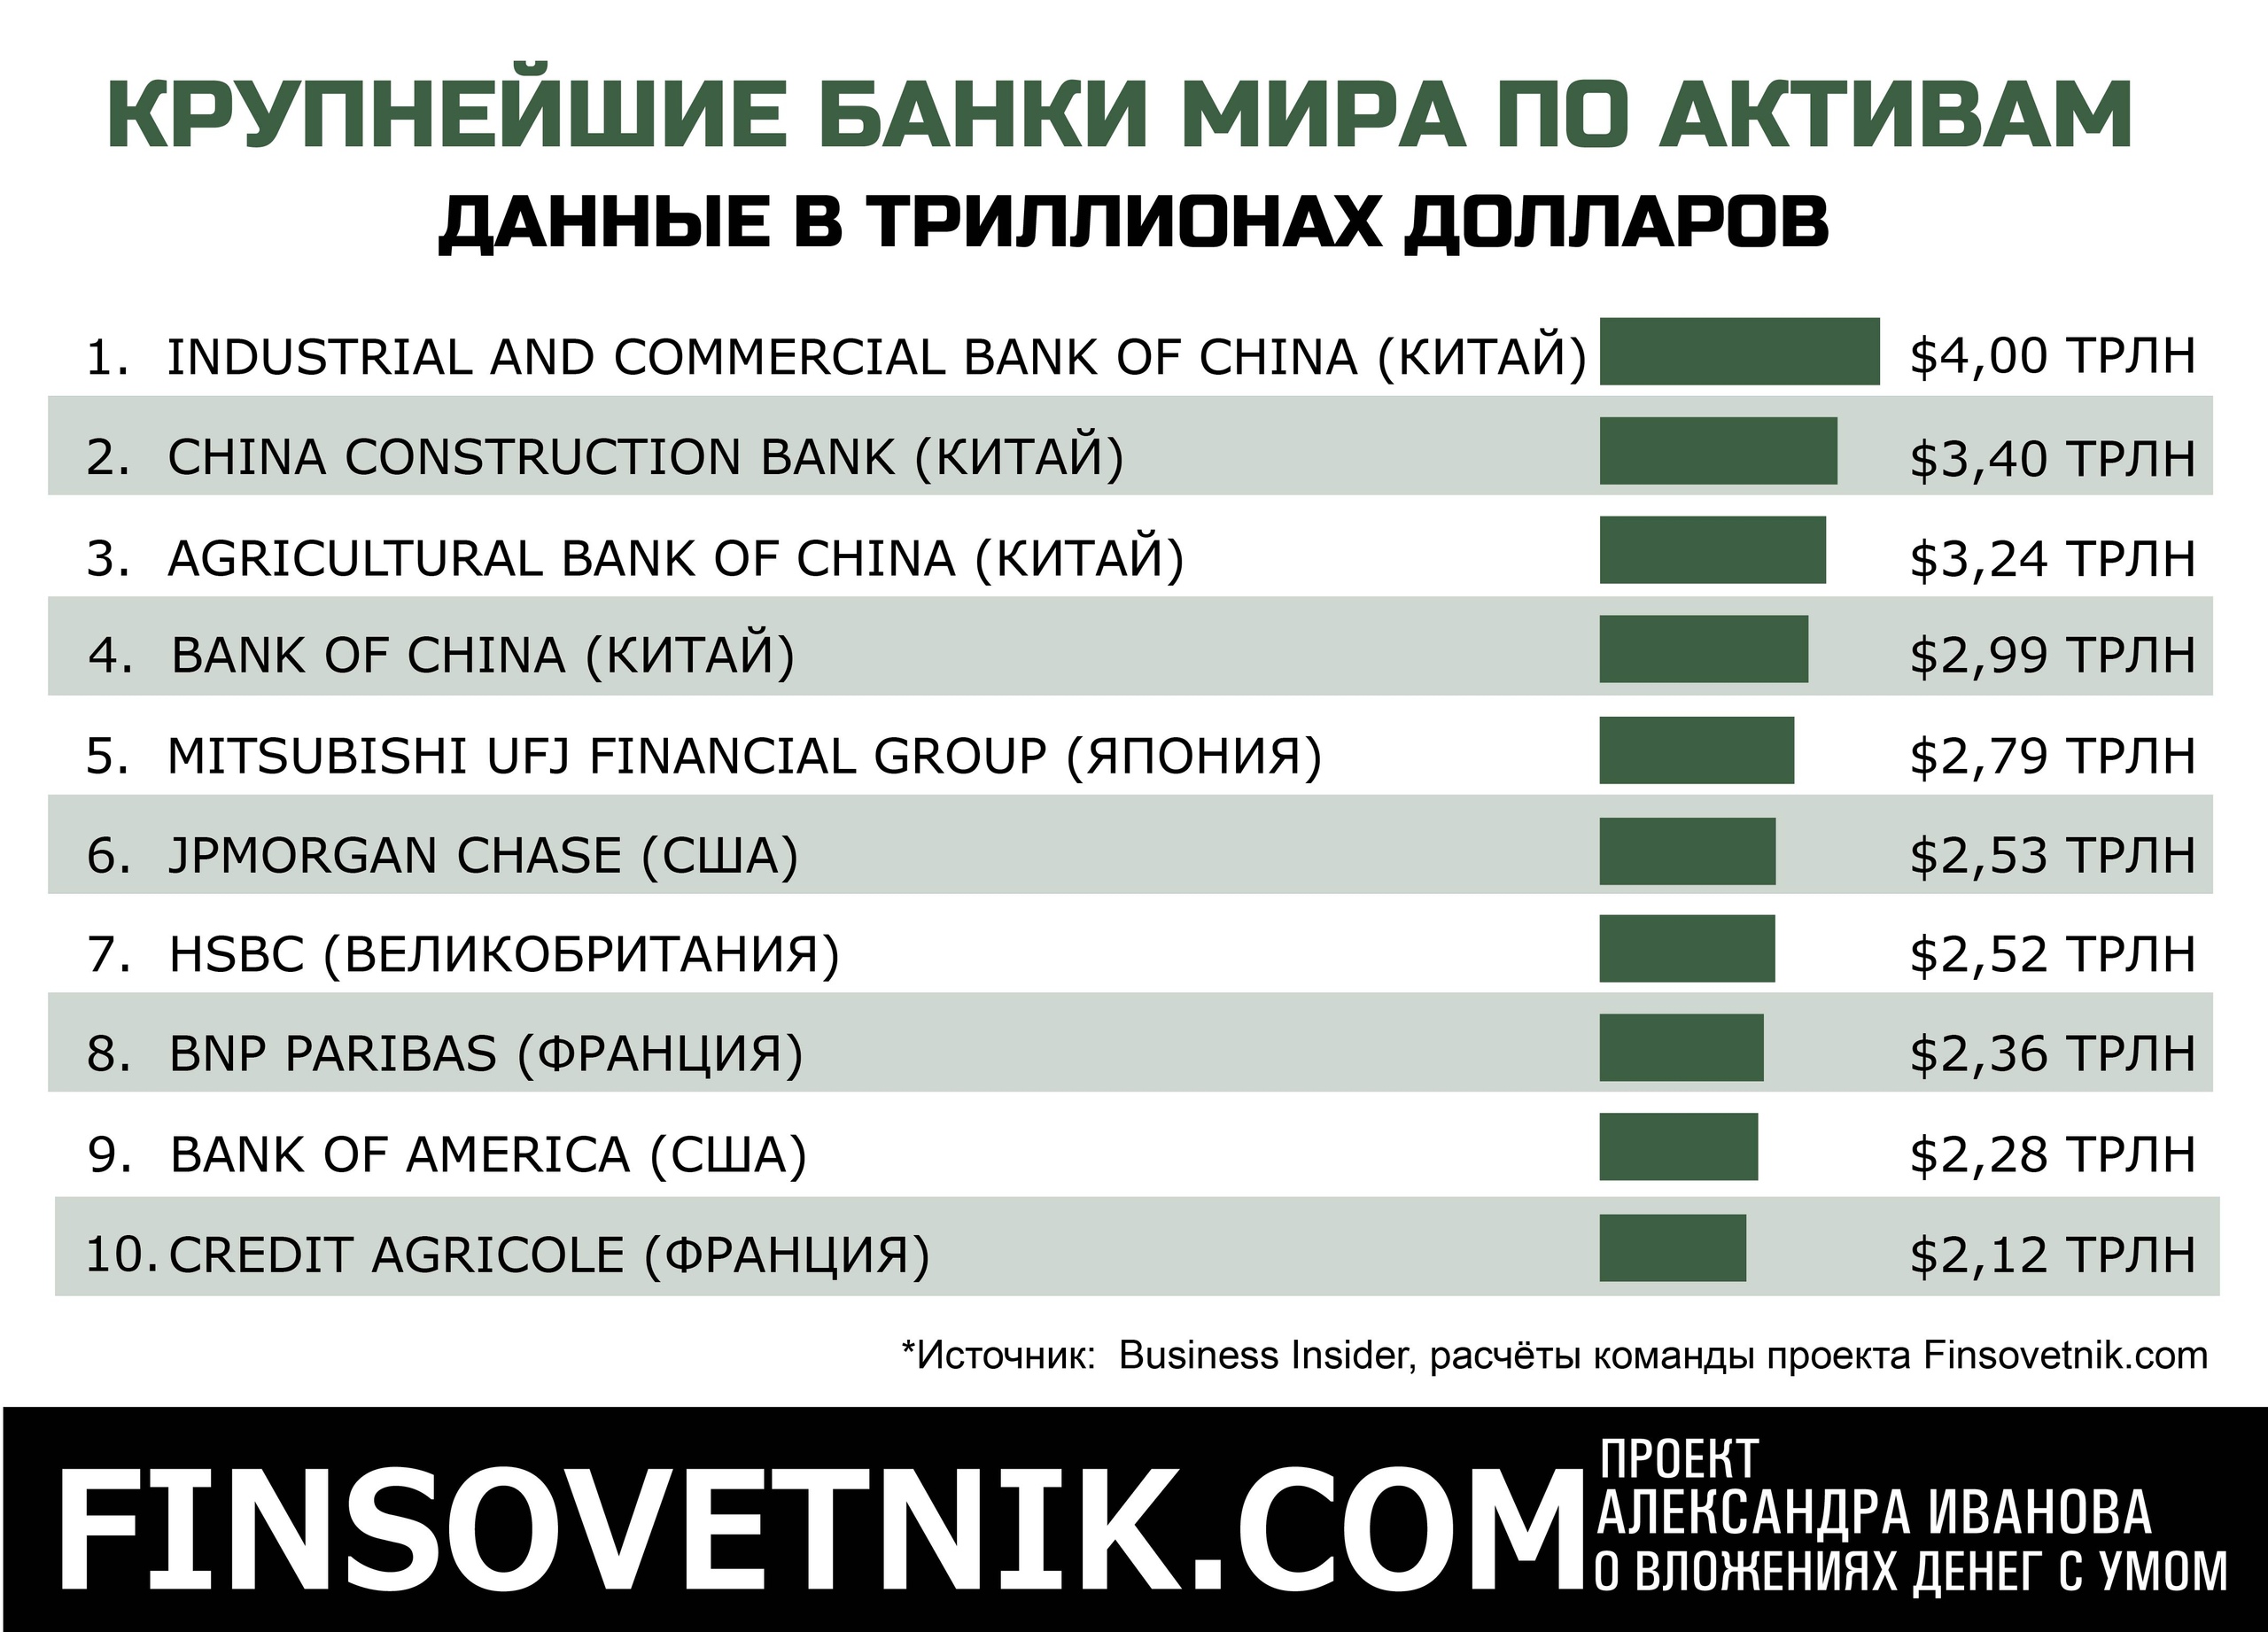 Российские банки по активам. Самые крупные банки. Топ 10 крупнейших банков.